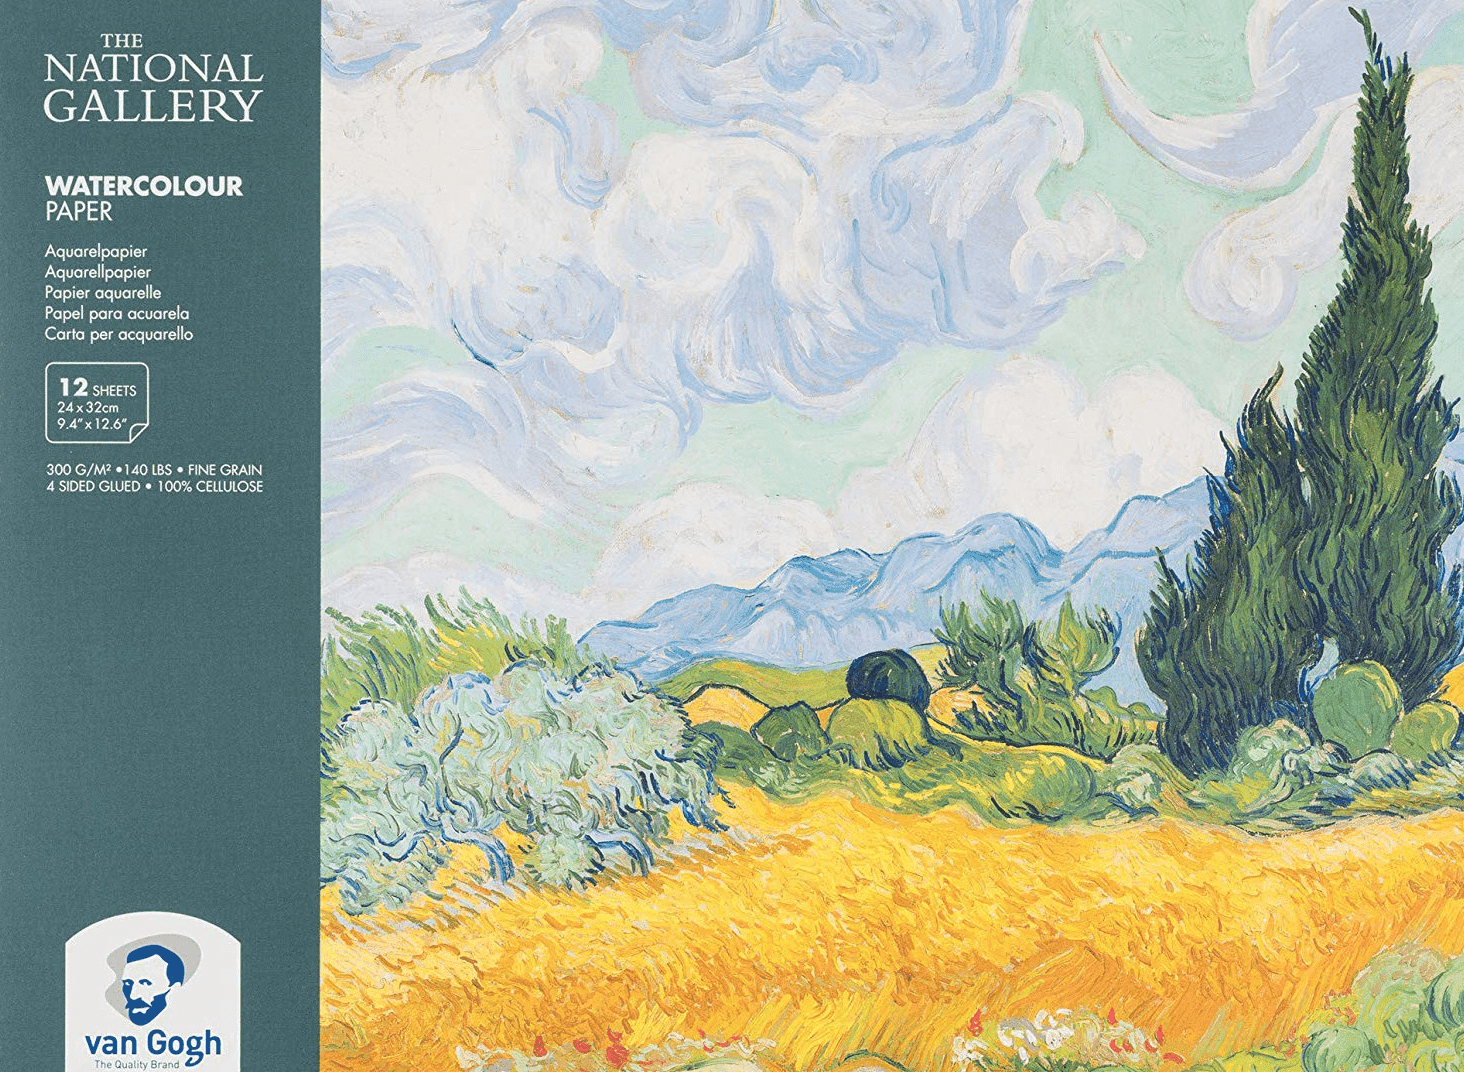 Blok pro akvarelové barvy Van Gogh The National Gallery 24x32cm, 300g, 12 listů